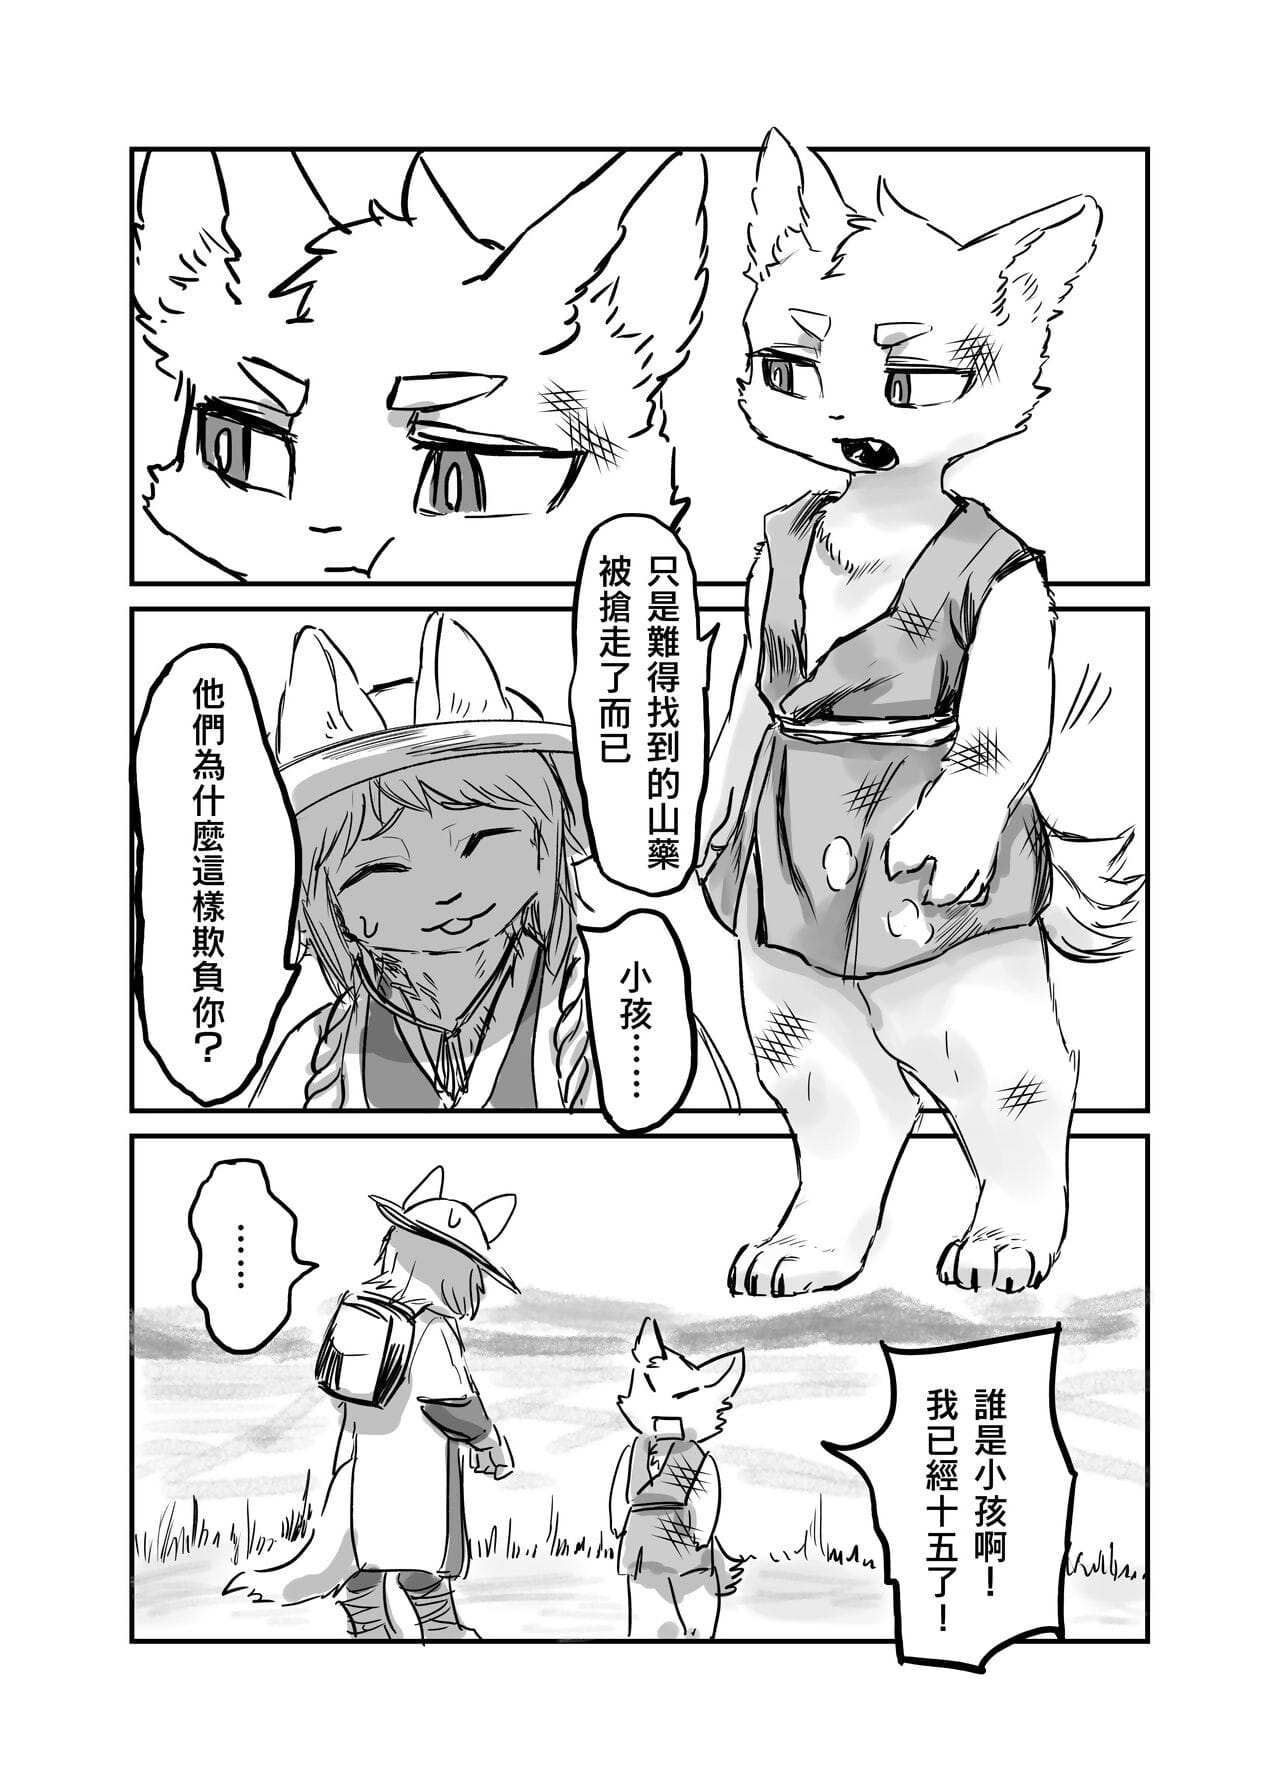 （the ziyaretçi 他乡之人 by：鬼流 page 1